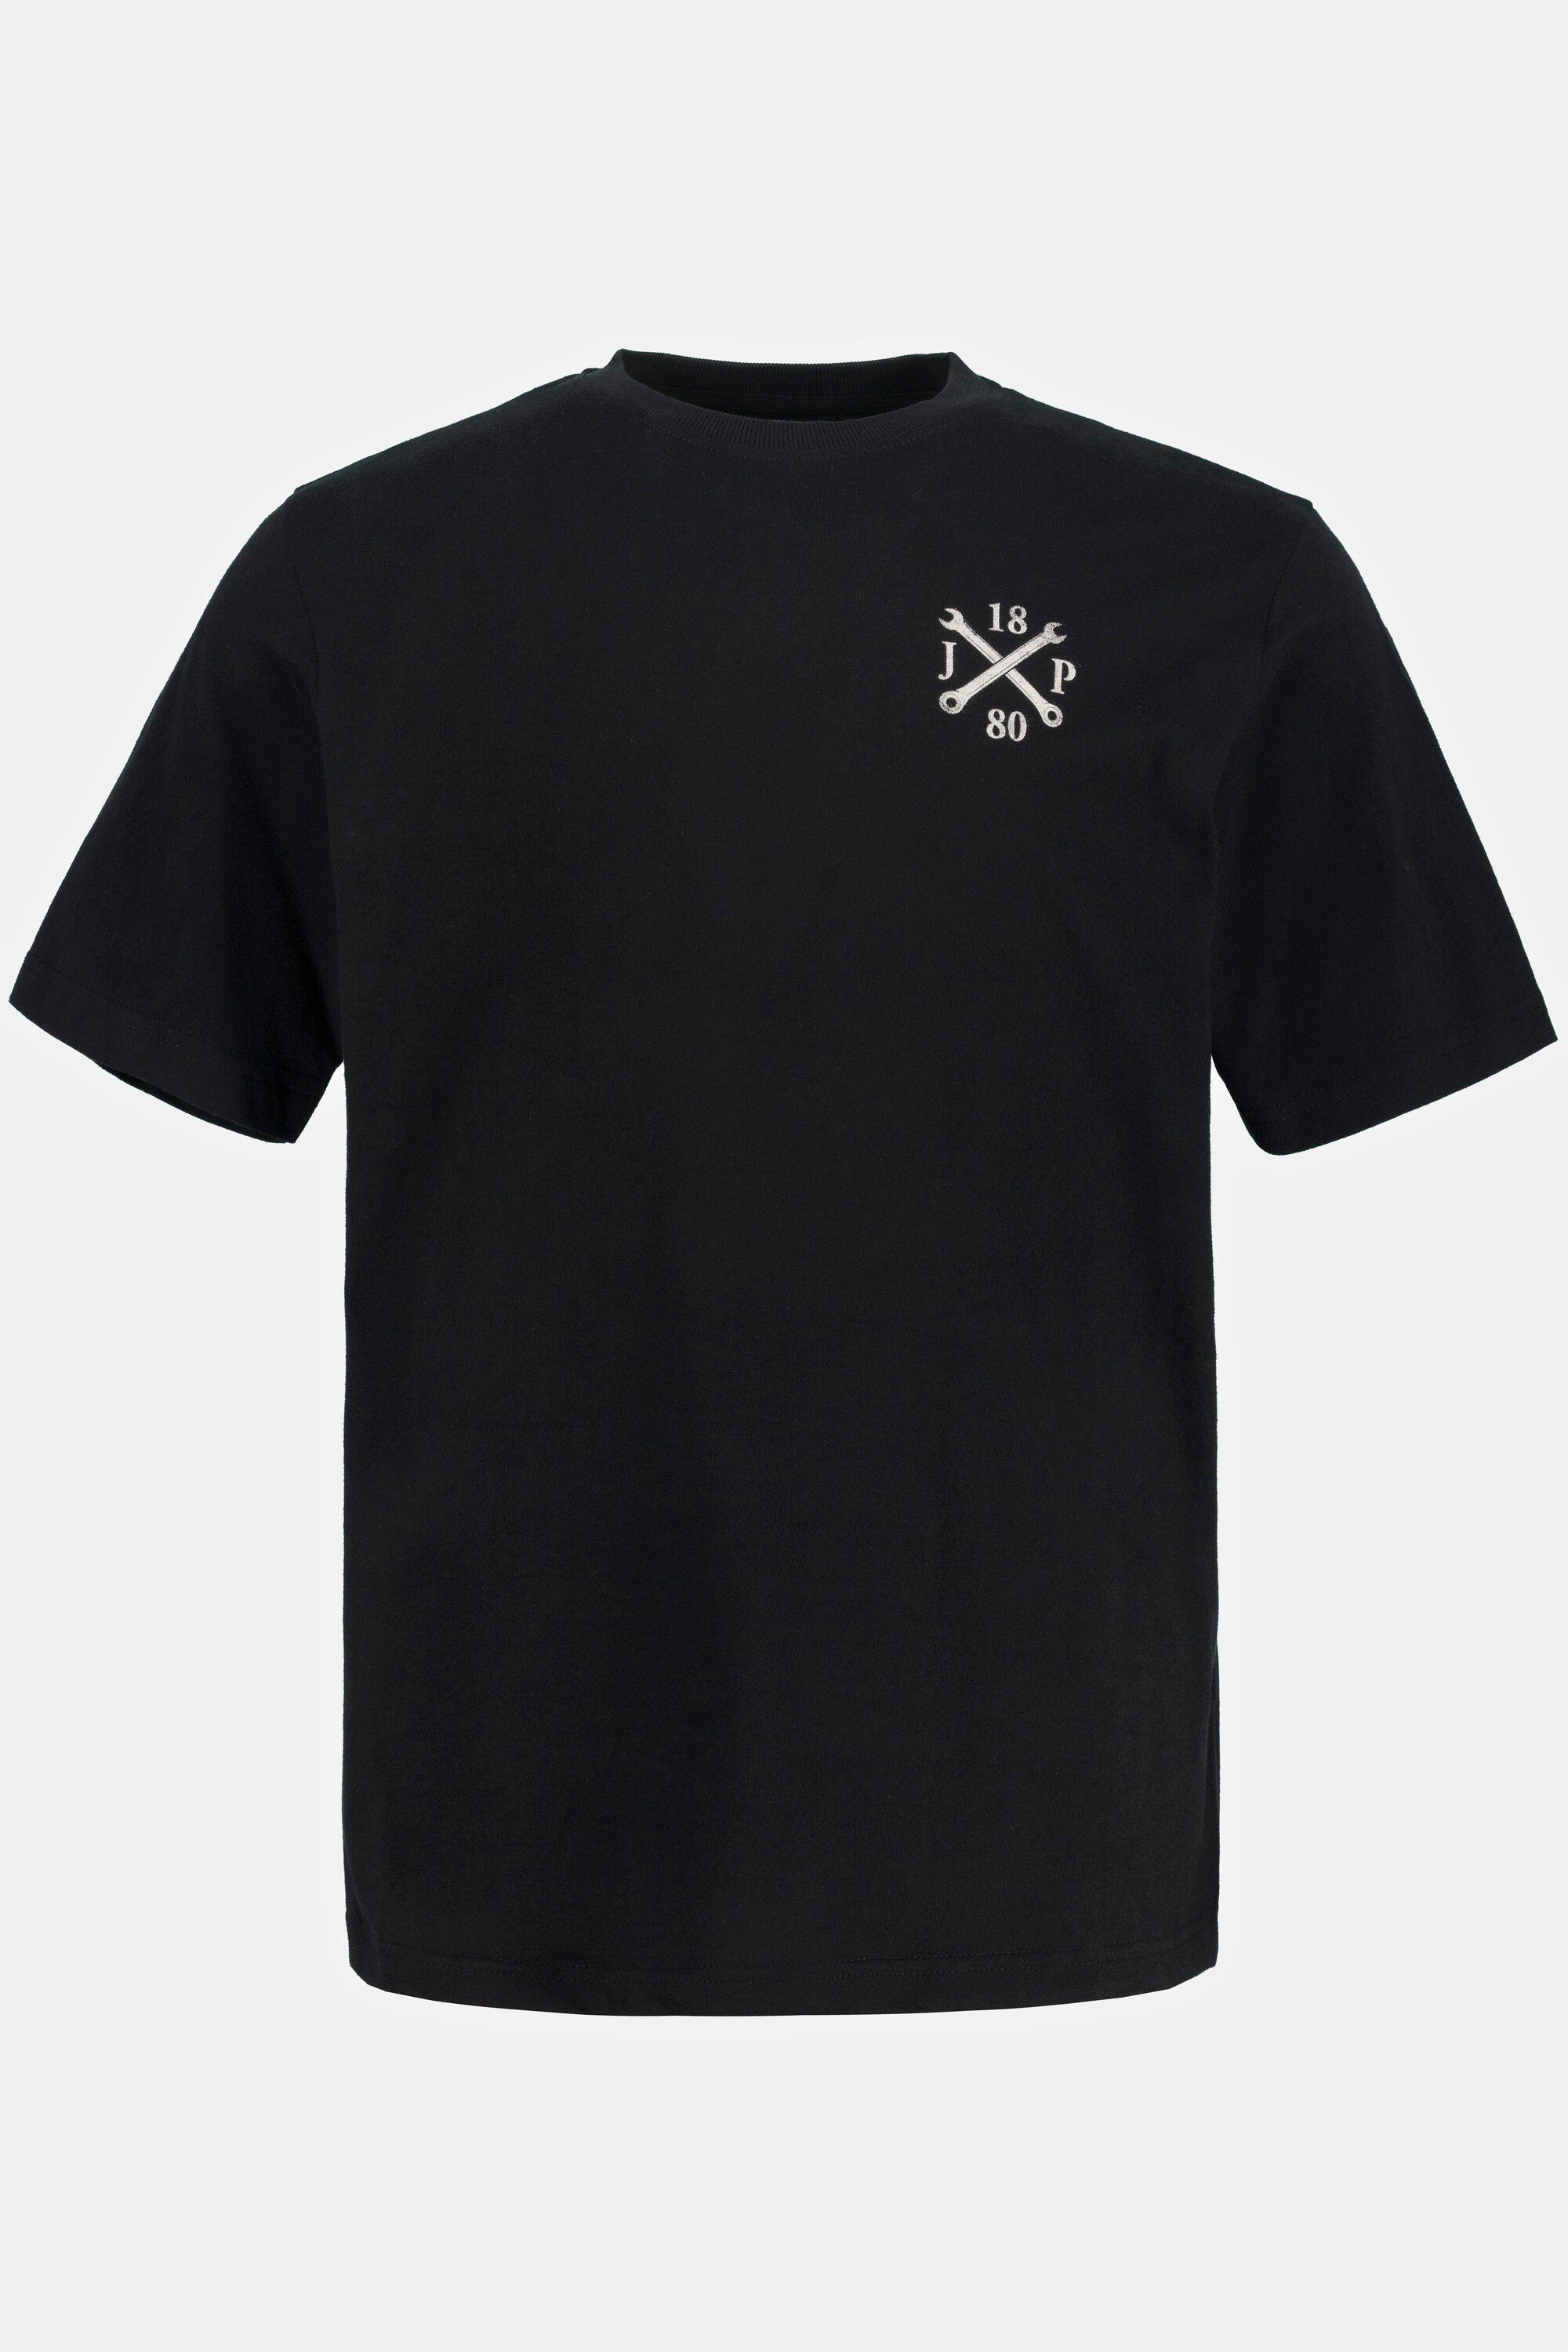 Herren Shirts JP1880 Rundhalsshirt T-Shirt Rücken Print Halbarm Rundhals